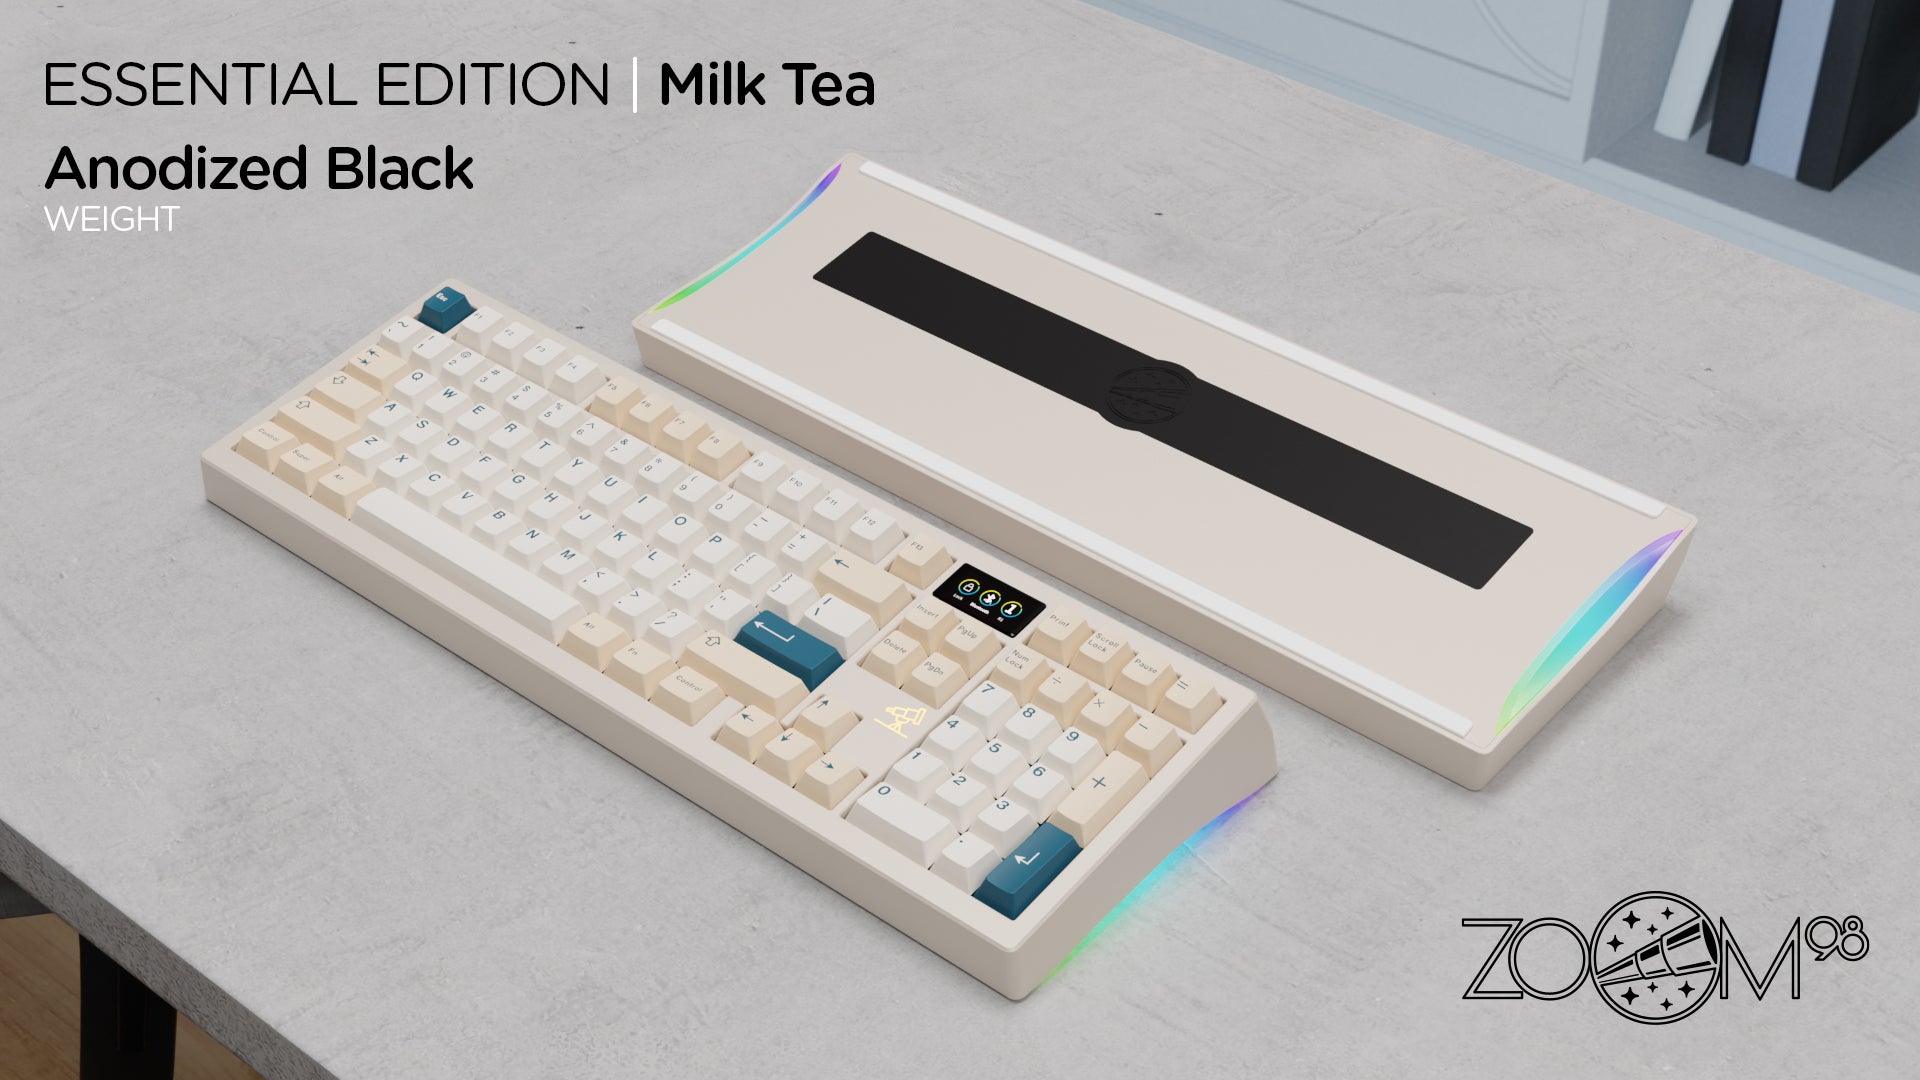 Zoom98 EE Milk Tea